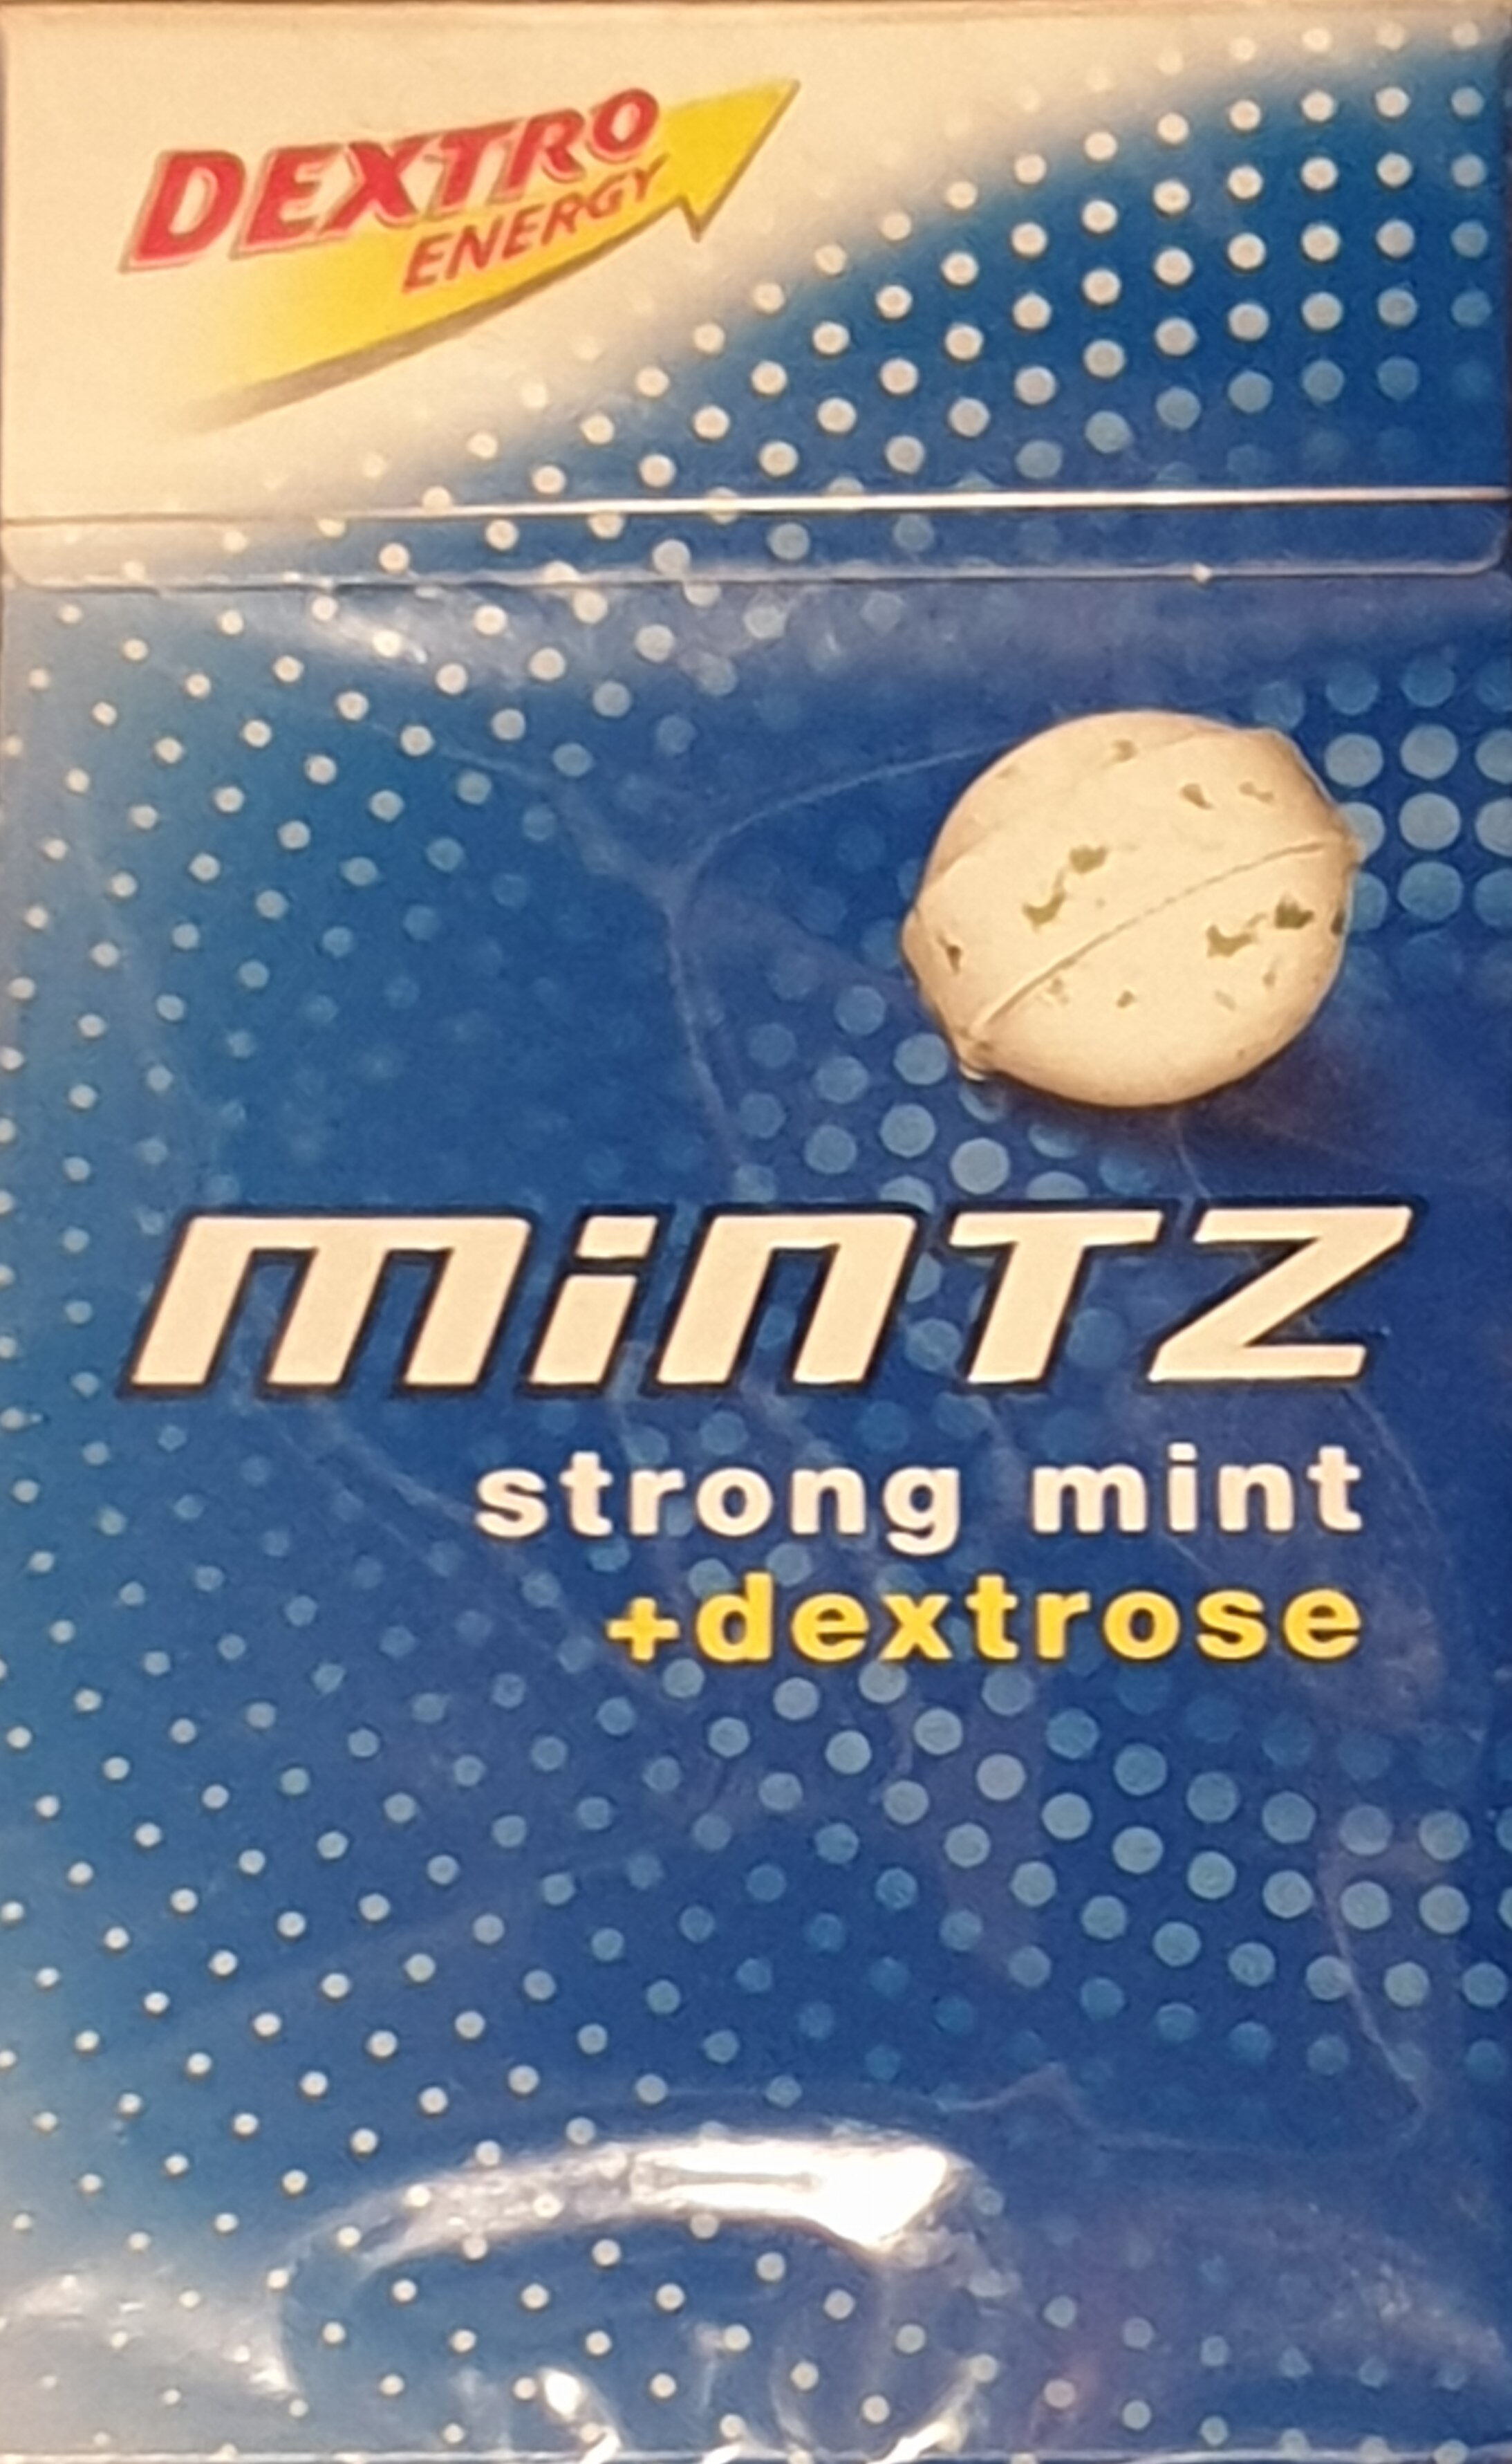 Mintz, Strong mint + dextrose - Product - de